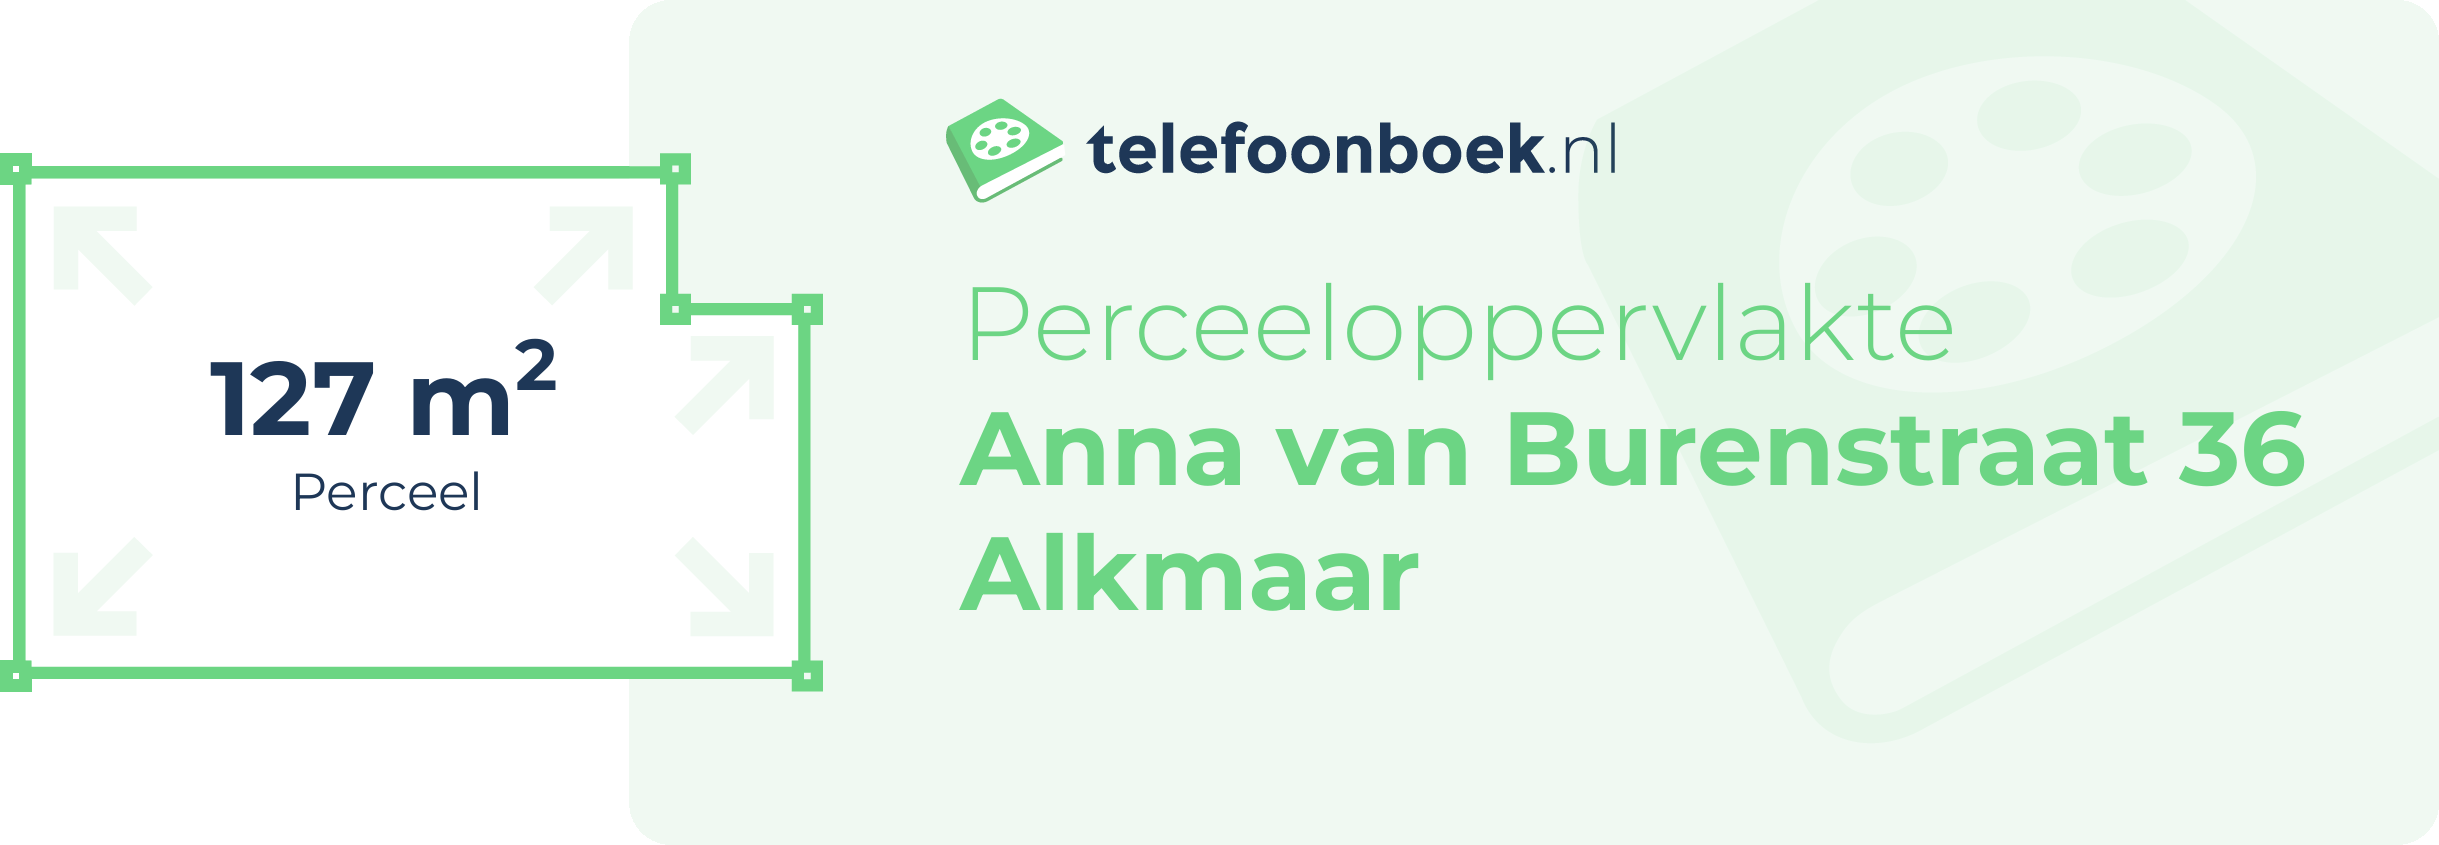 Perceeloppervlakte Anna Van Burenstraat 36 Alkmaar